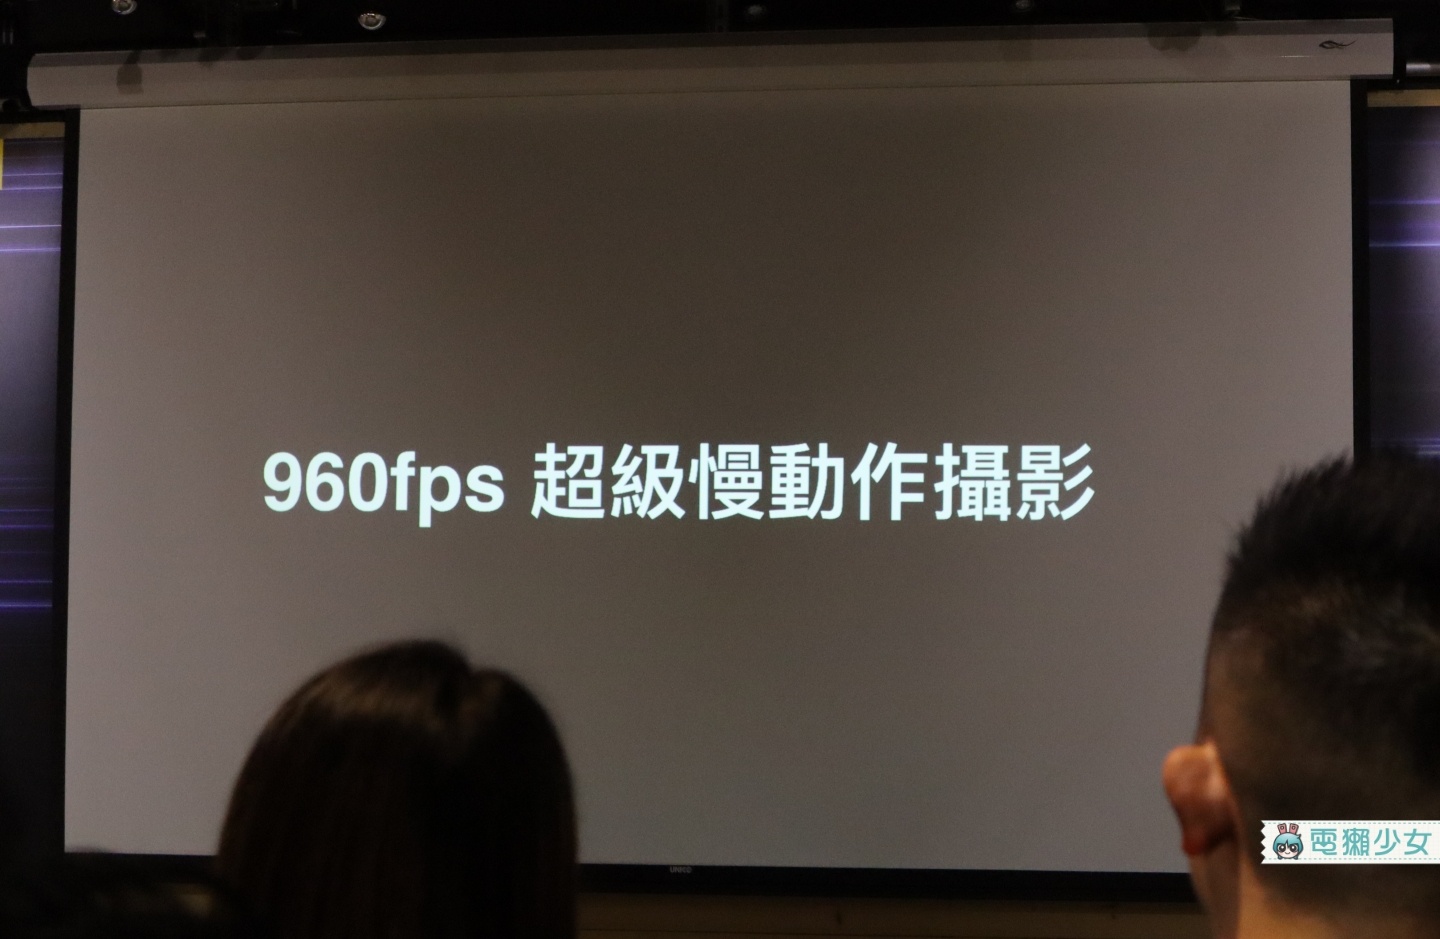 出門｜太佛心！『 realme 3 Pro 』新台幣七千有找！採用S710，還能拍超級夜景和960fps慢動作錄影